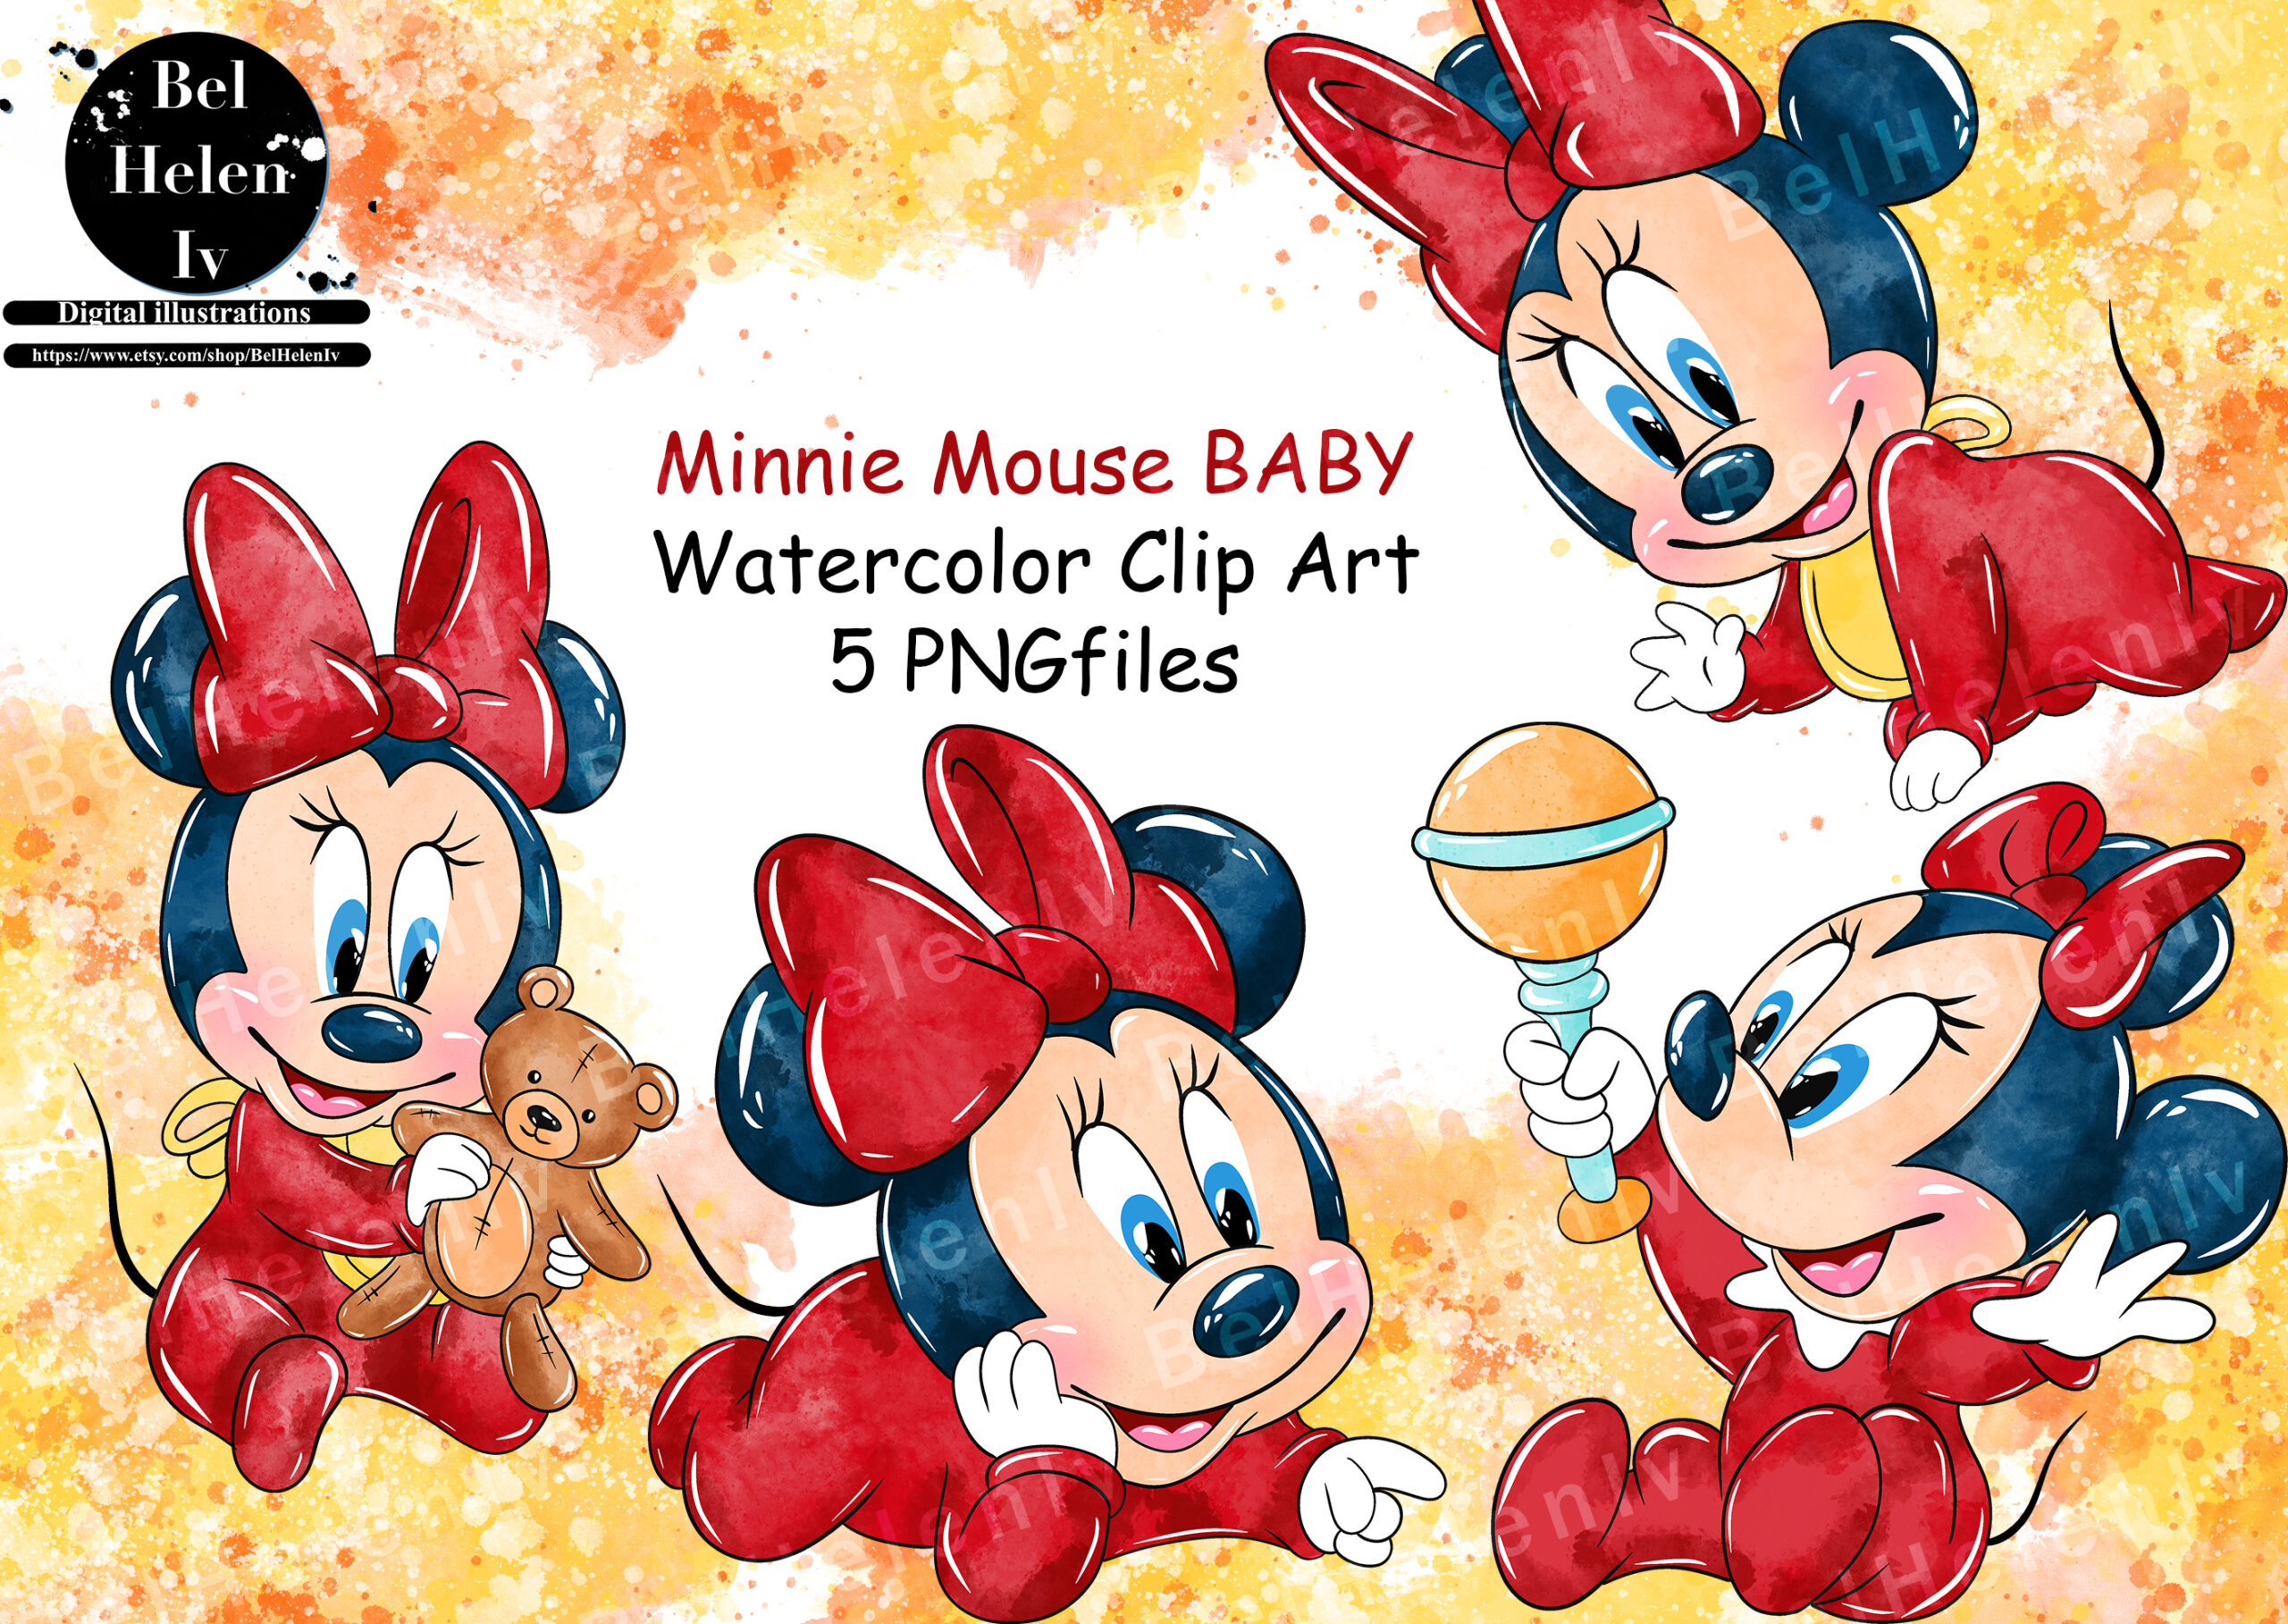 3 Ways to Draw Minnie Mouse - wikiHow